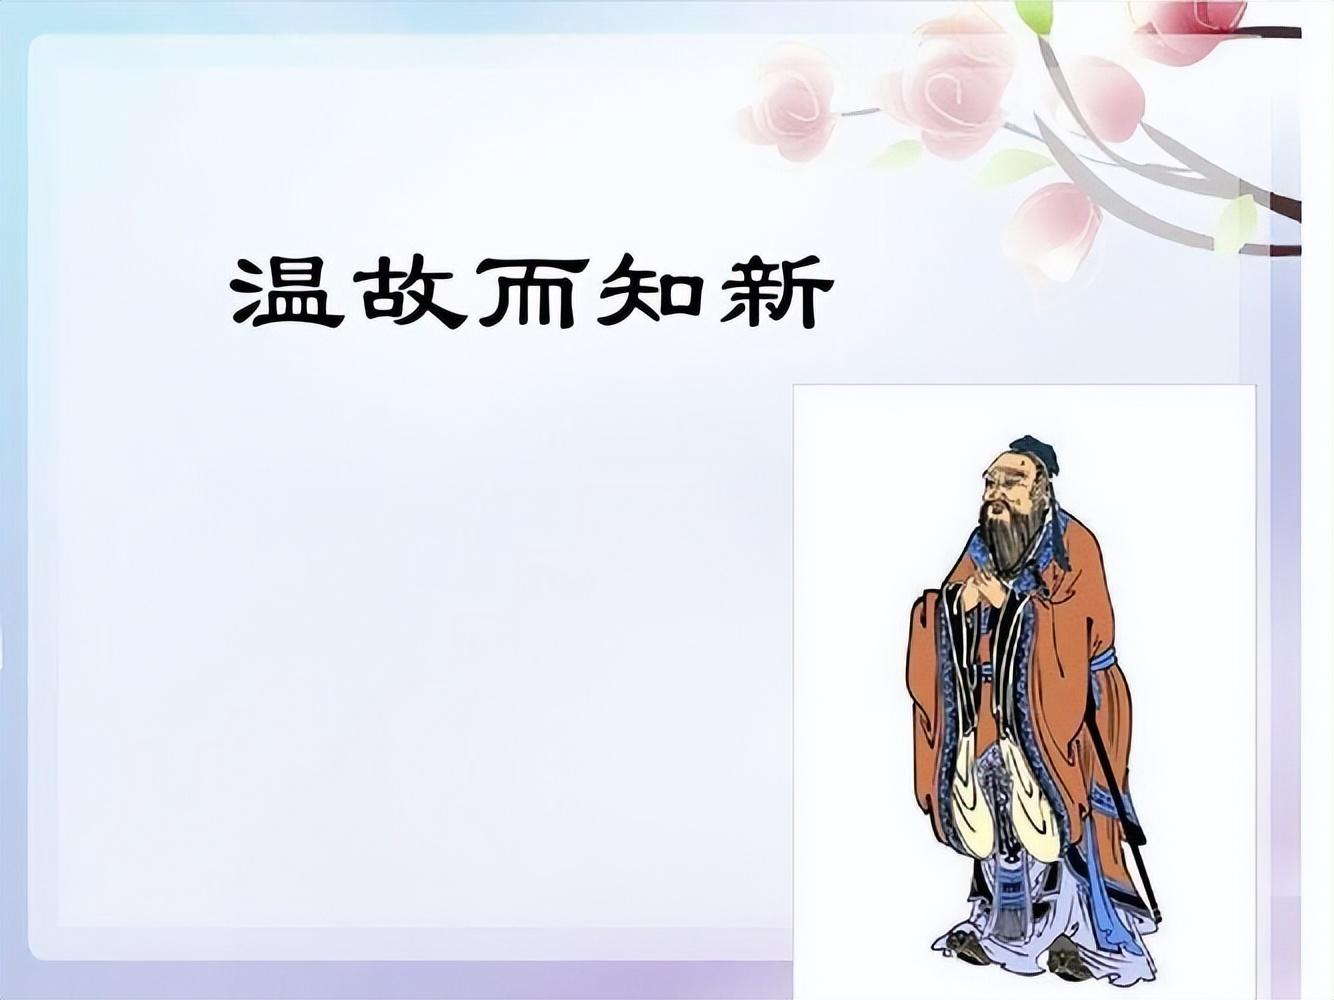 天人合一思想 儒家_中国红色政权存在发展的原因_儒家思想在古代中国能够长期存在的原因